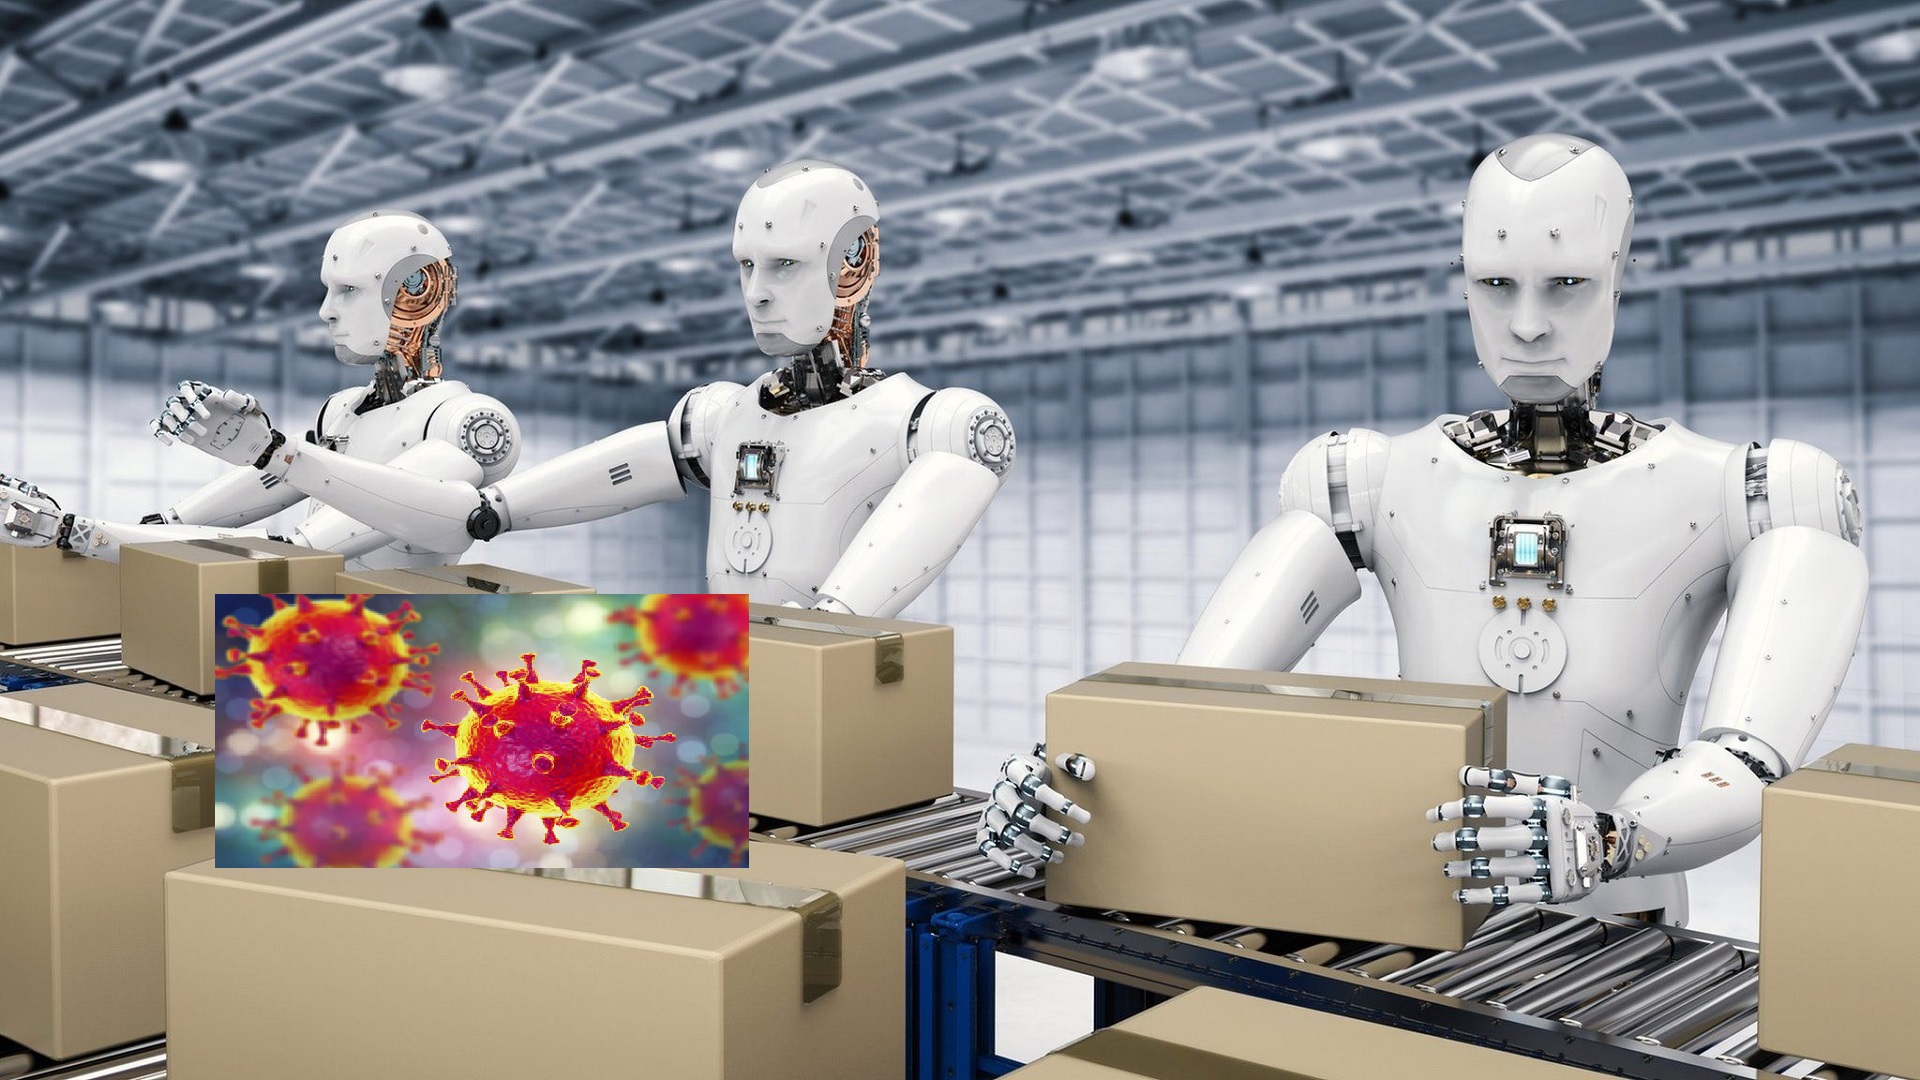 Κορωνοϊός τεχνολογική ανάπτυξη: Θα μπορούσαν τα ρομπότ να καταστρέψουν τον ιό;